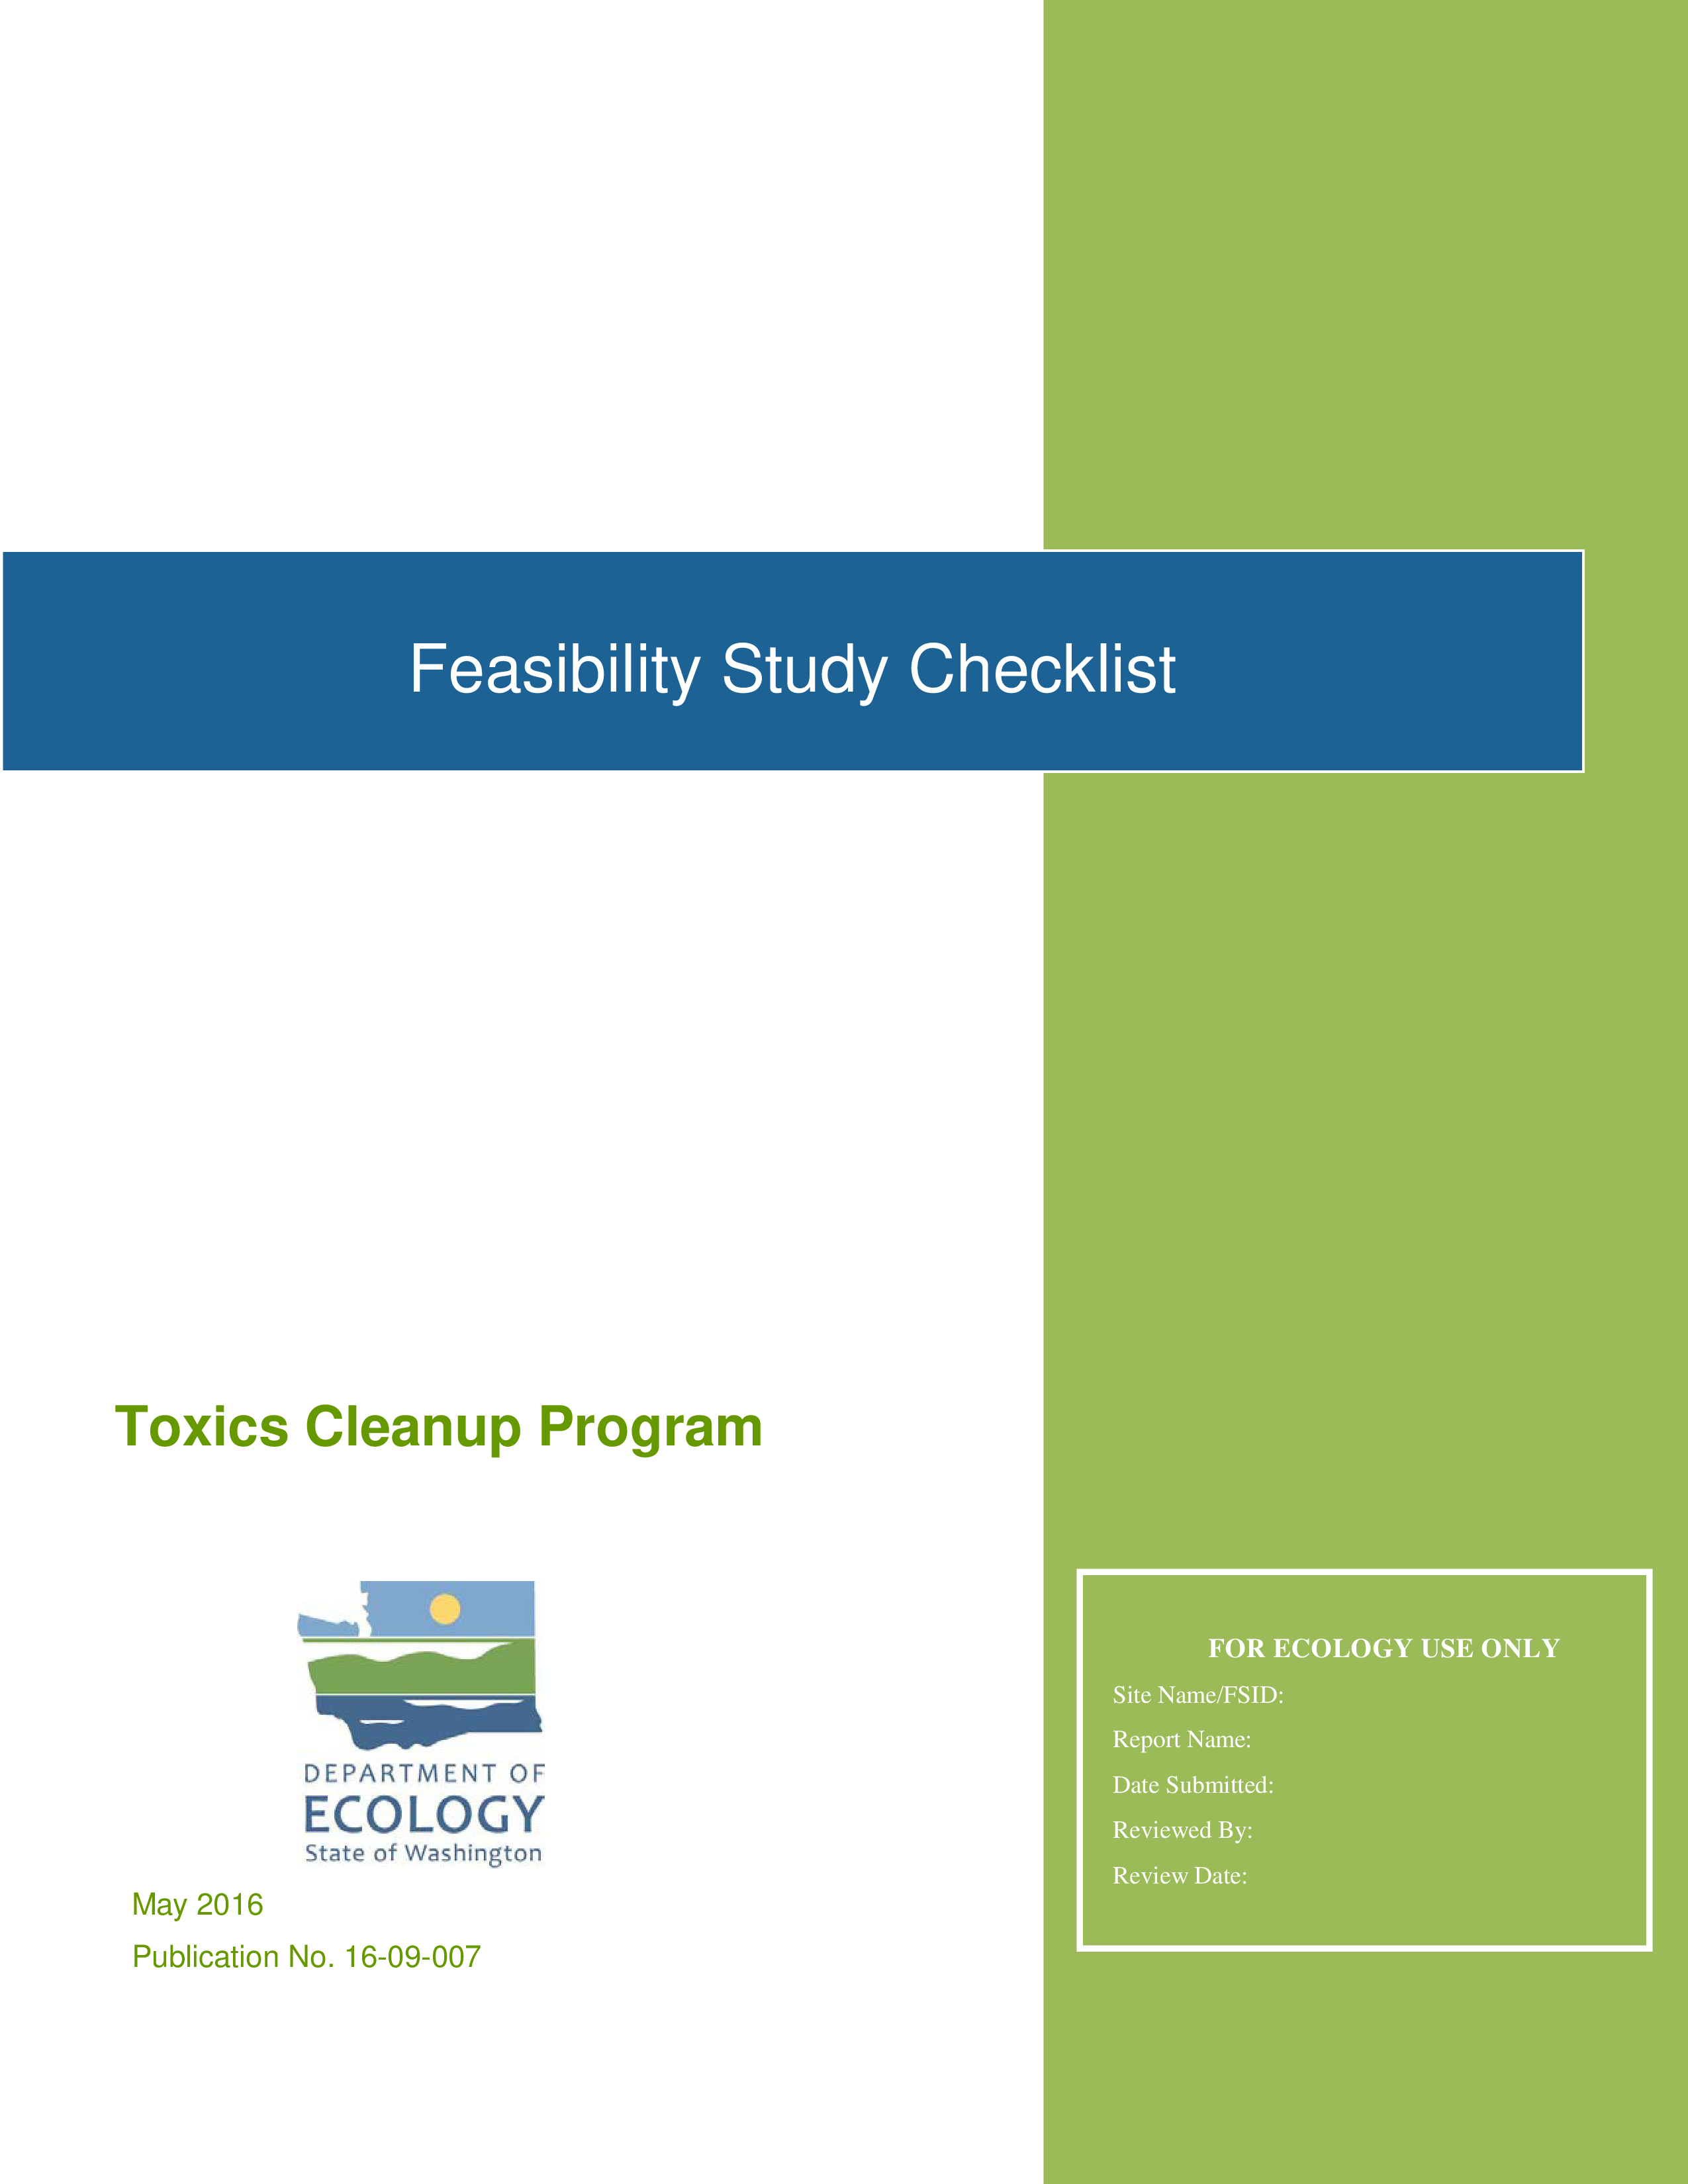 Feasibility Study Checklist 模板